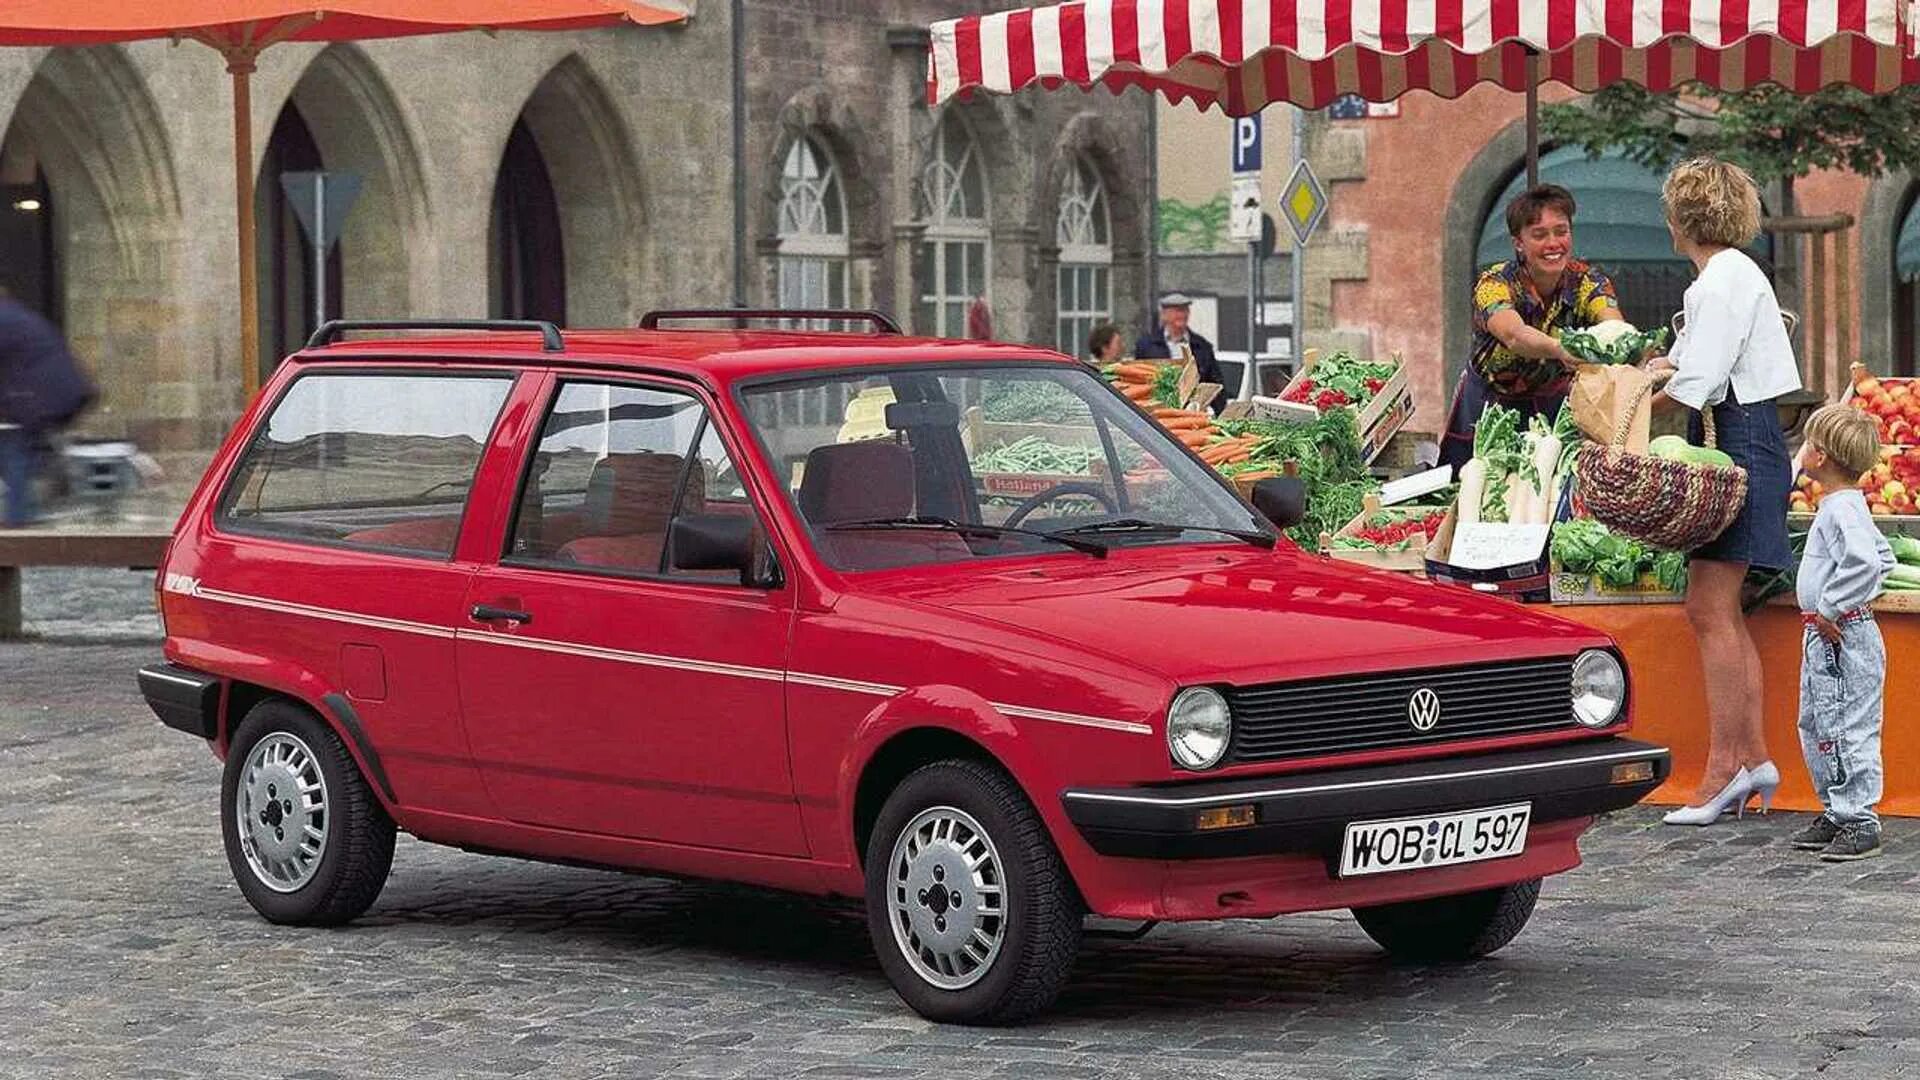 Vw polo 2. VW Polo 1986. VW Polo 1. VW Polo 1987.